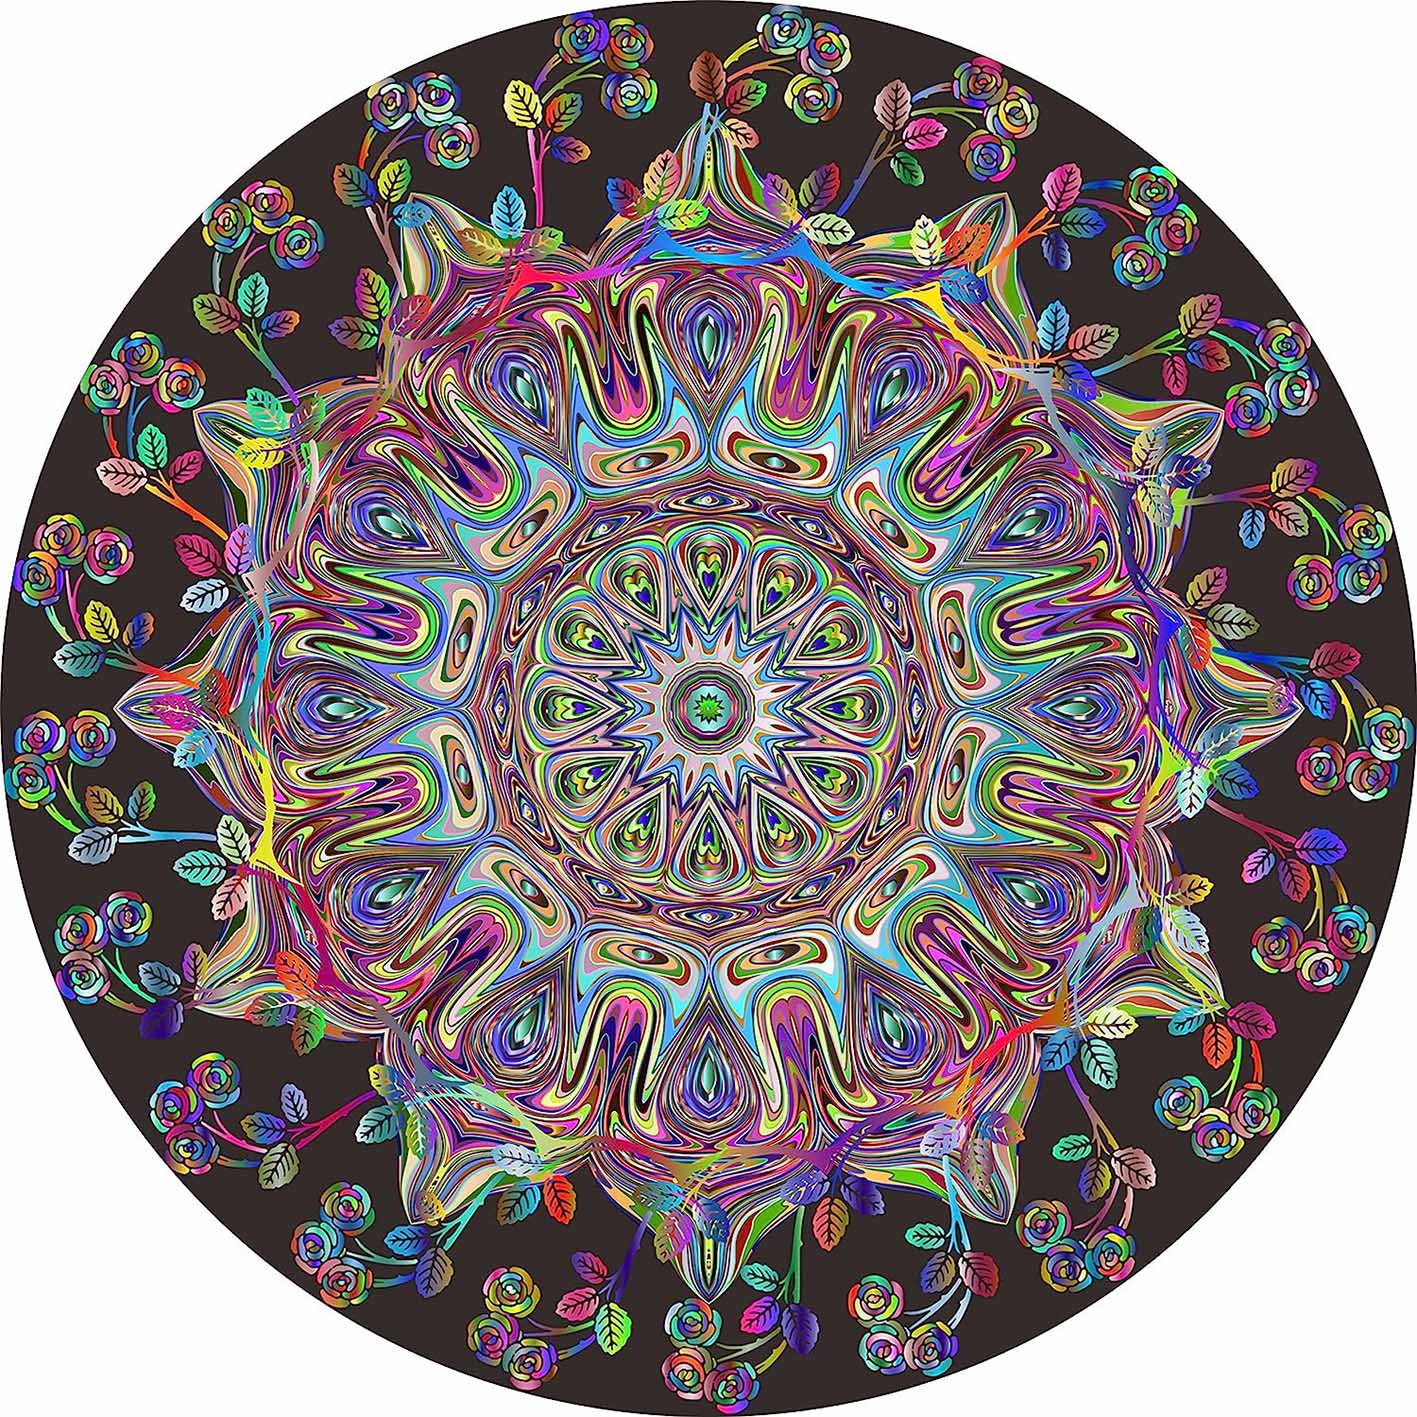 Pickforu® Mandala Flower Jigsaw Puzzles 1000 Pieces